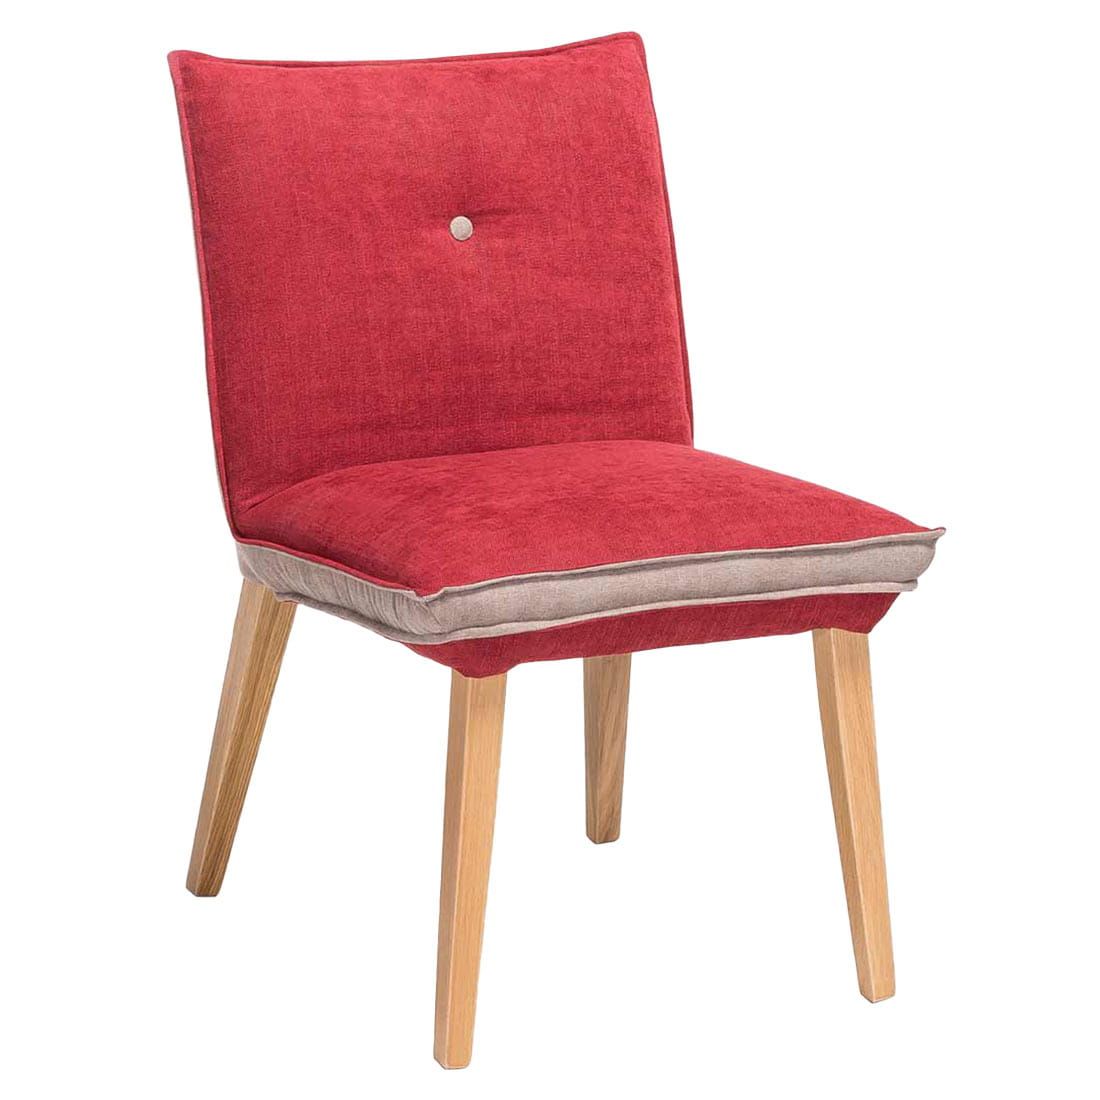 Rot/Beige/Eiche Standard Furniture Genua Natur Stuhl